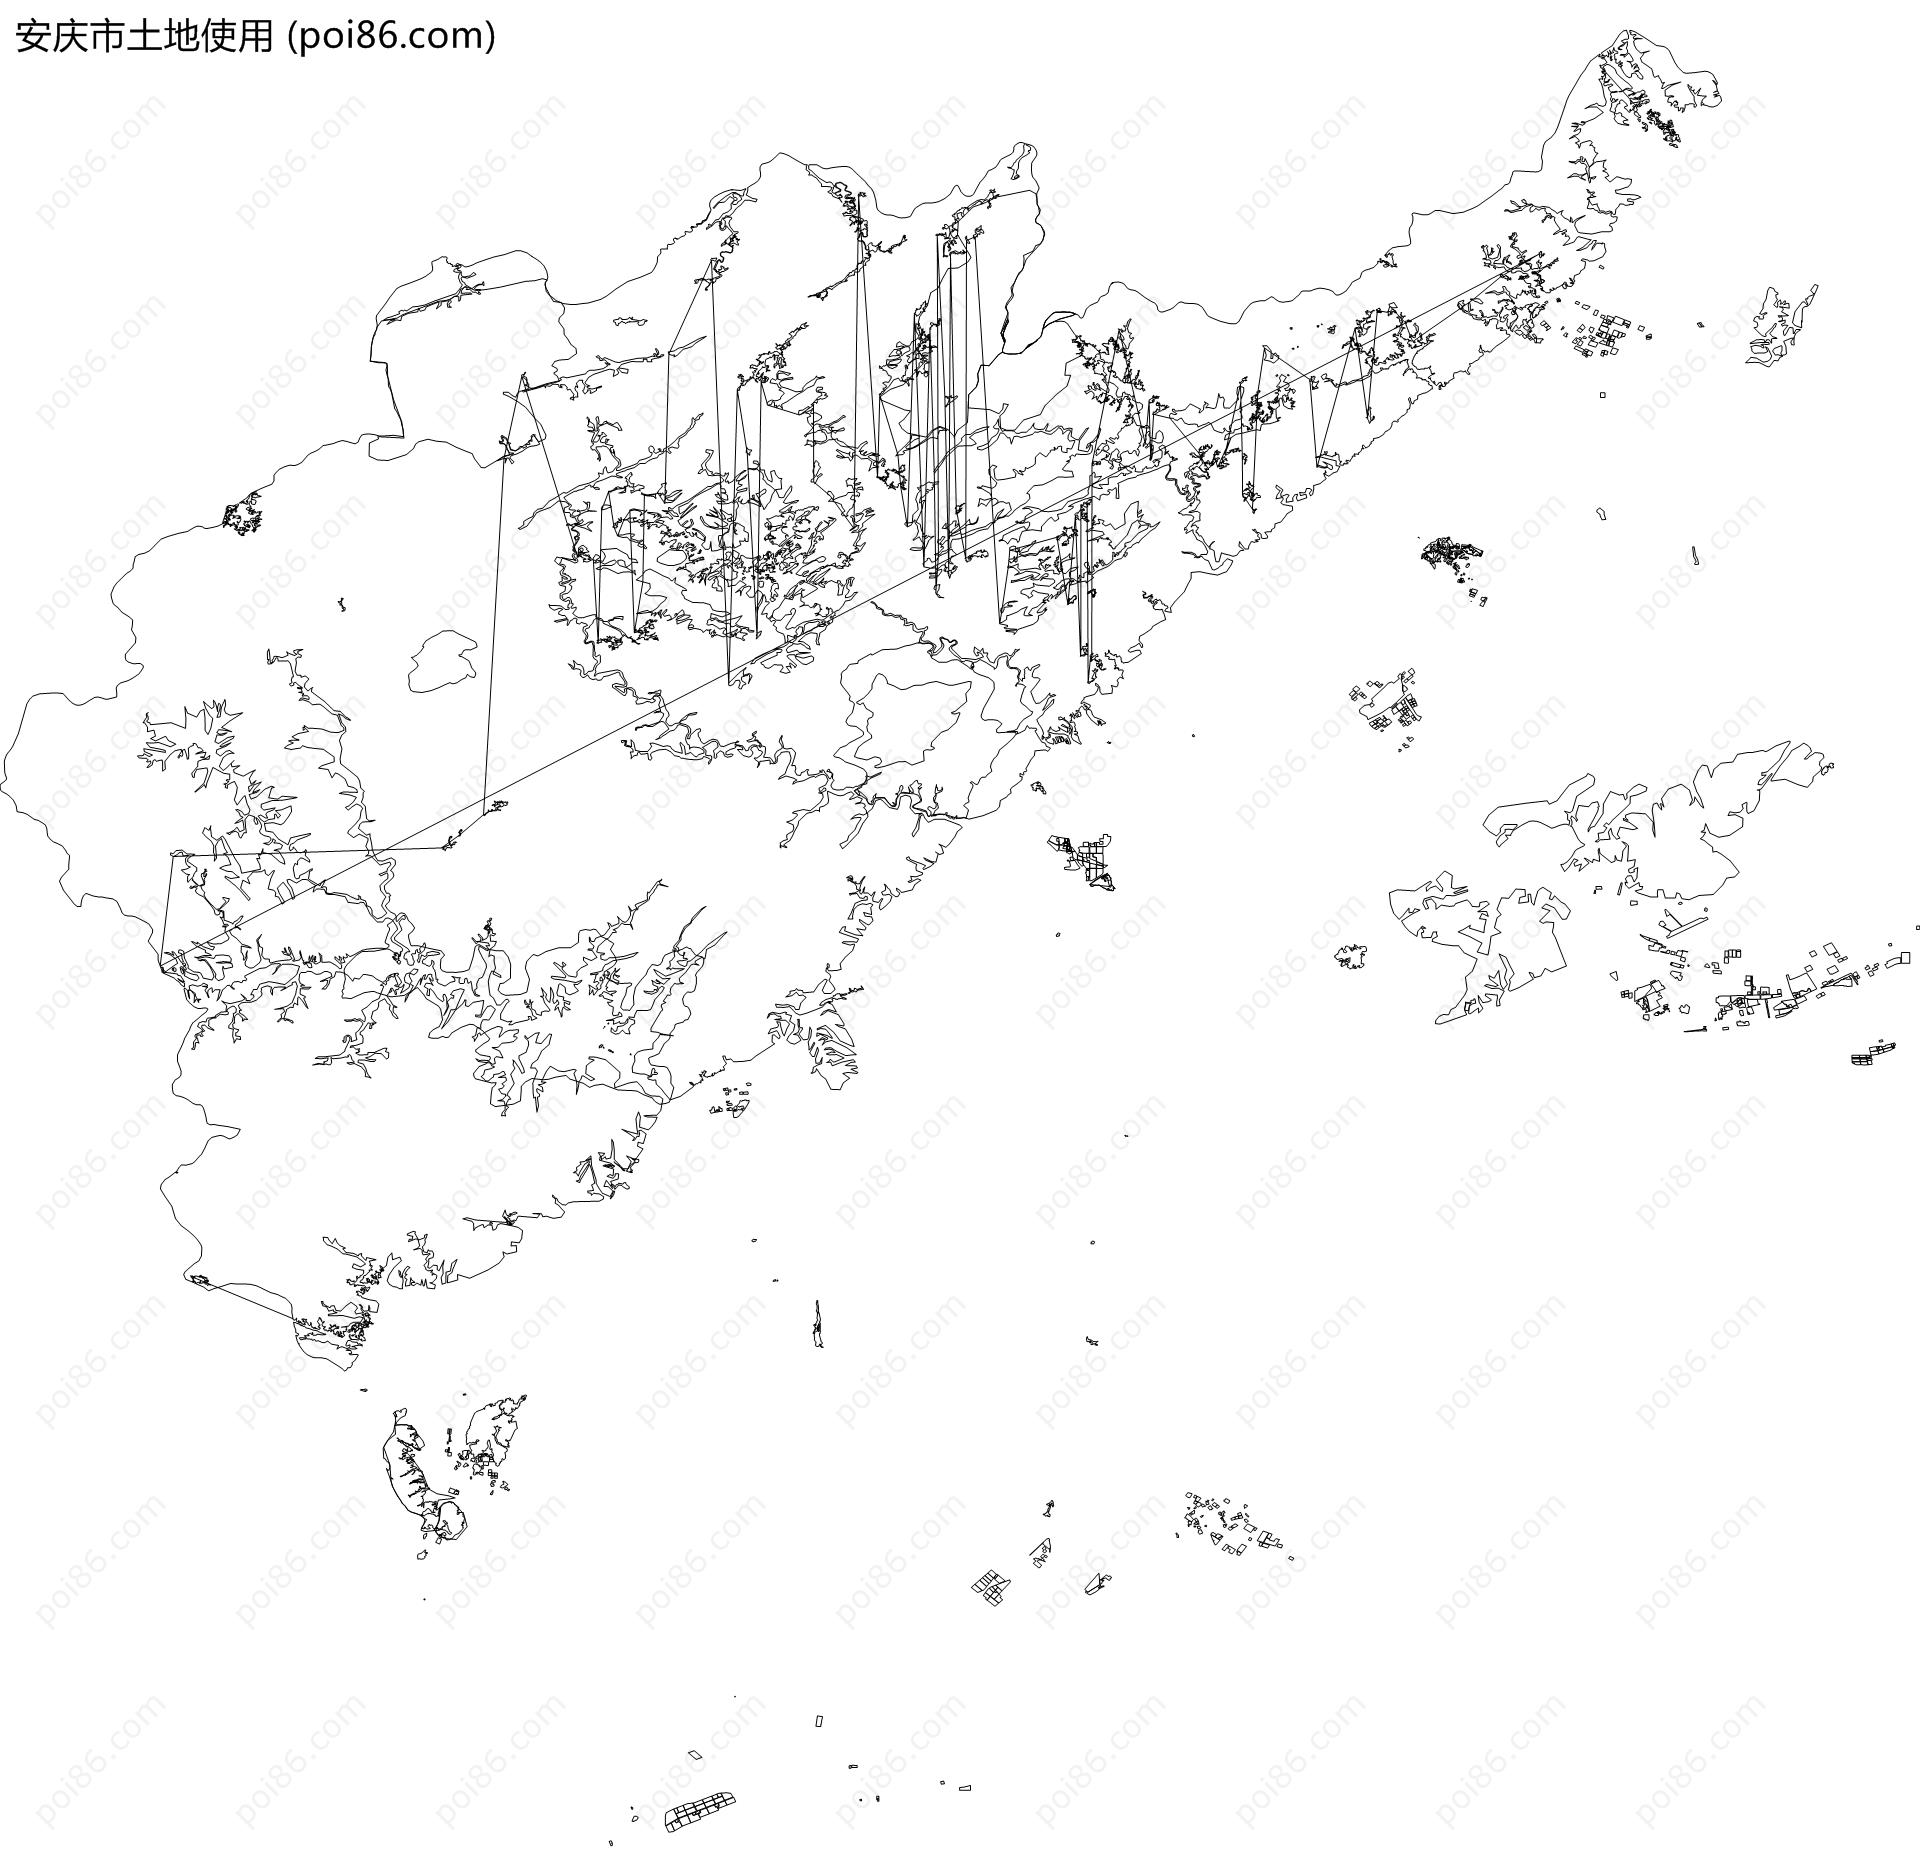 安庆市土地使用地图